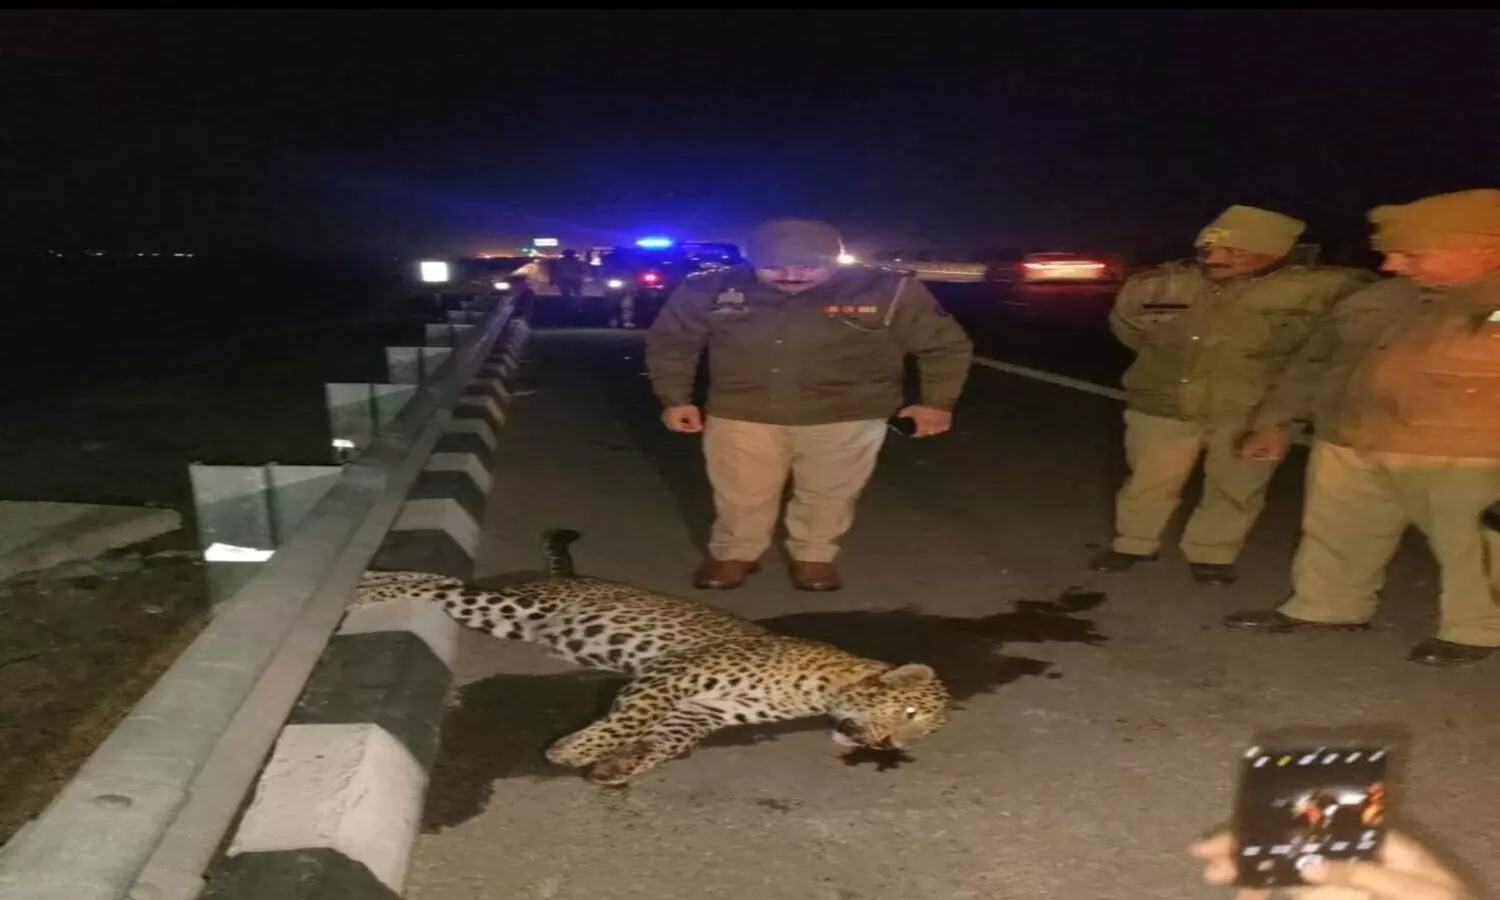 Meerut Delhi Expressway Leopard body found